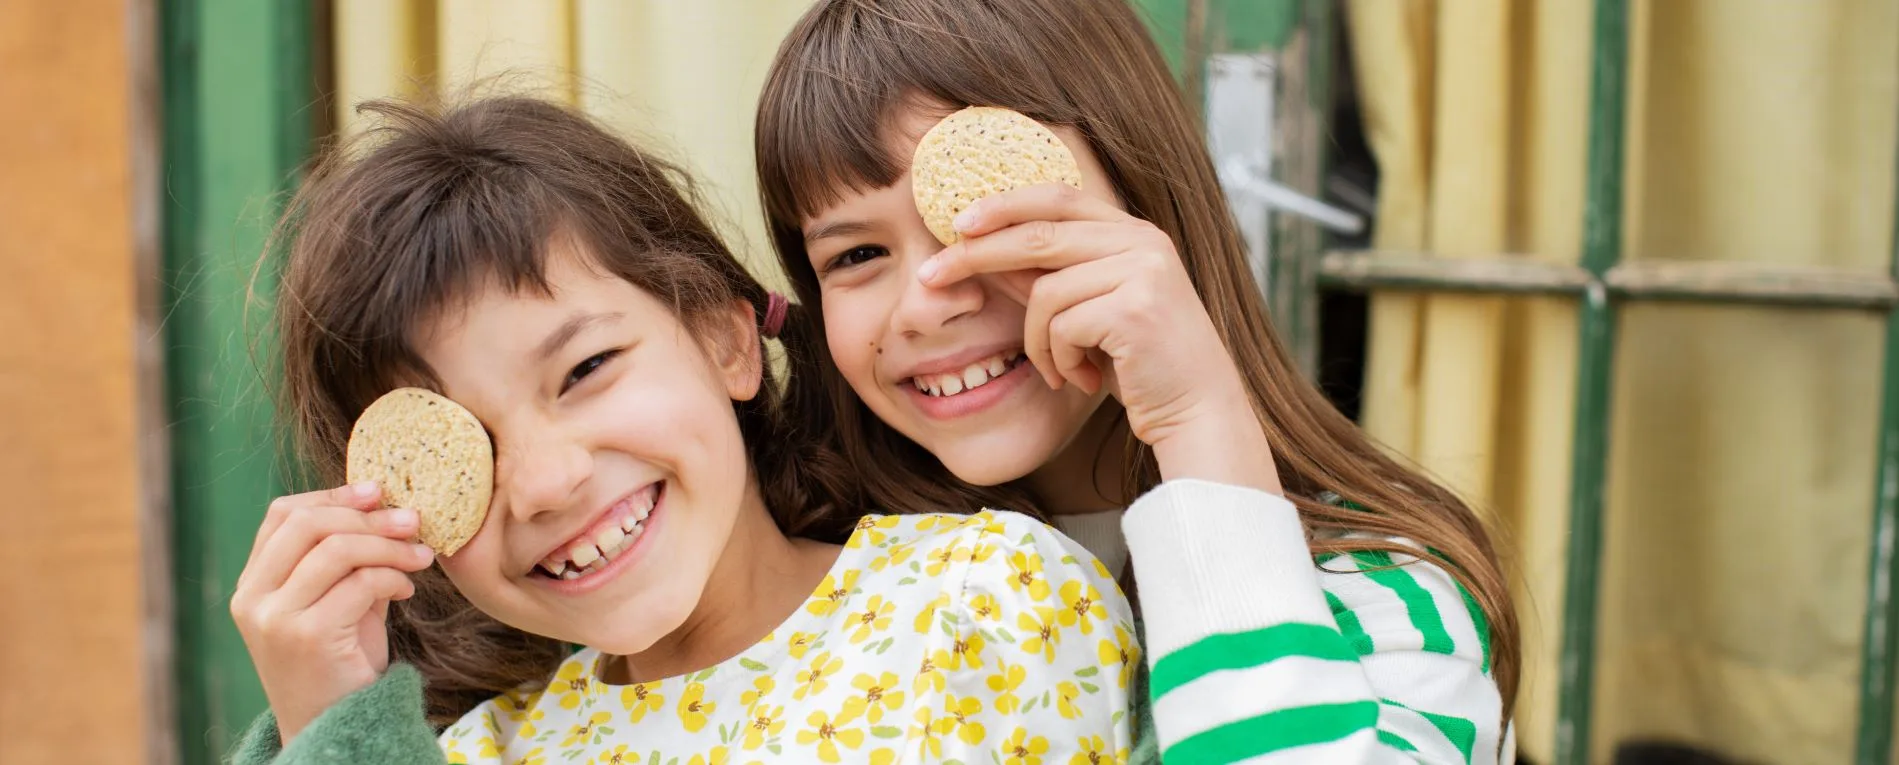 foto-apaisada-de-dos-niñas-sonriendo-con-galletas-de-limon-y-chia-de-milola-gluten-free